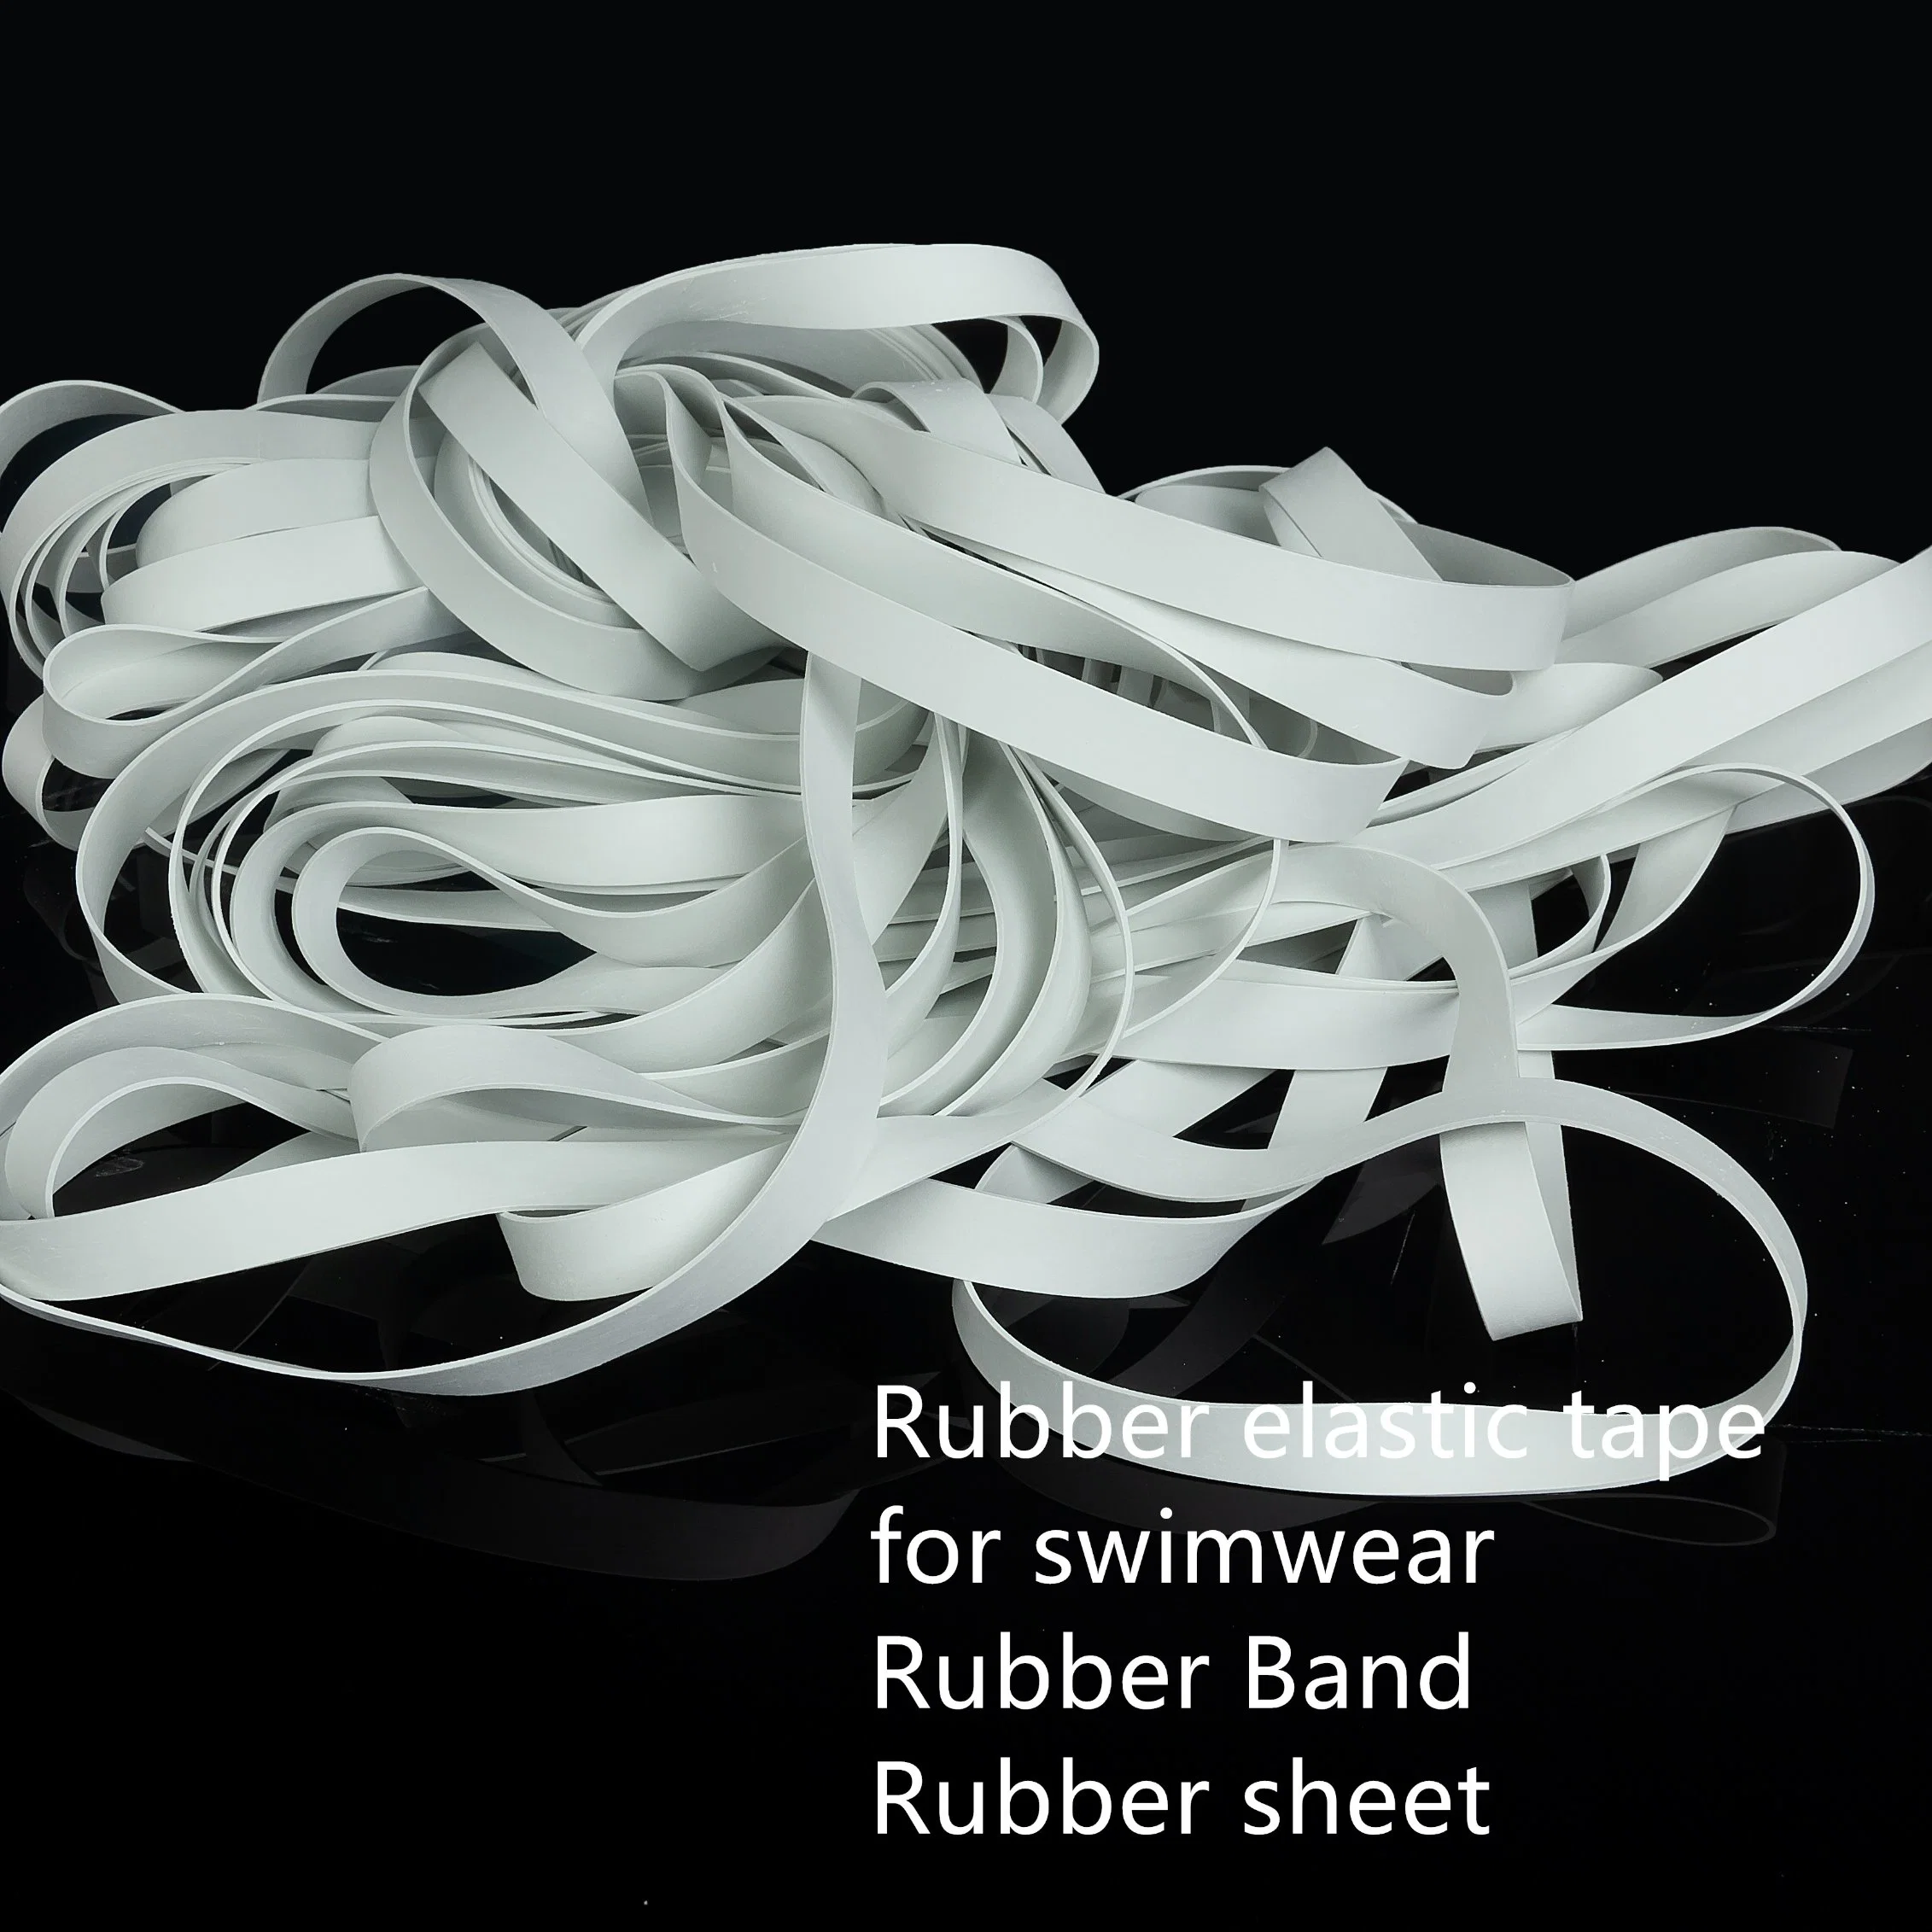 10мм натурального каучука эластичные для купальный костюм, Waitsband